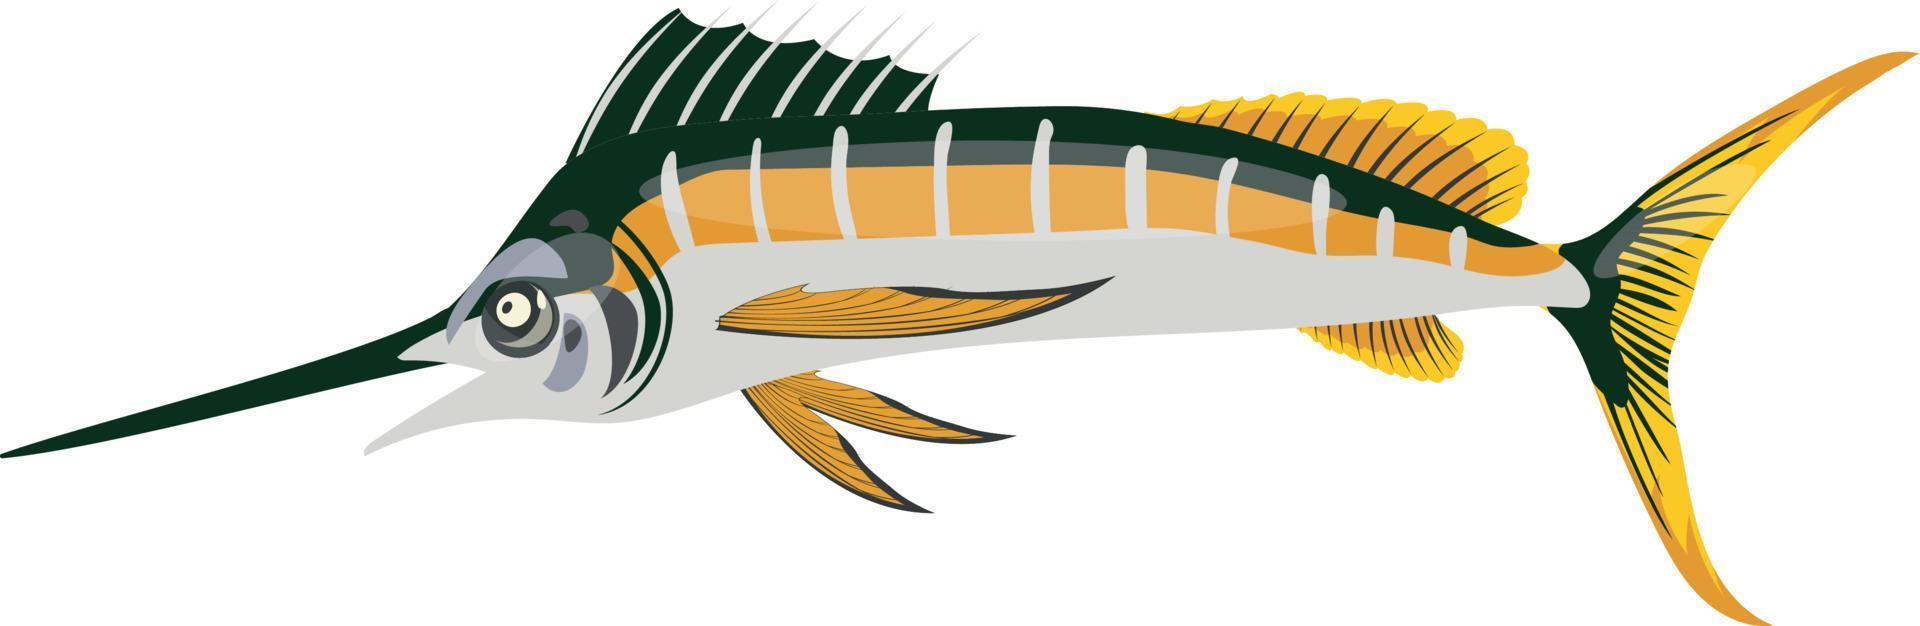 vector illustratie van zee vis met vinnen en staart